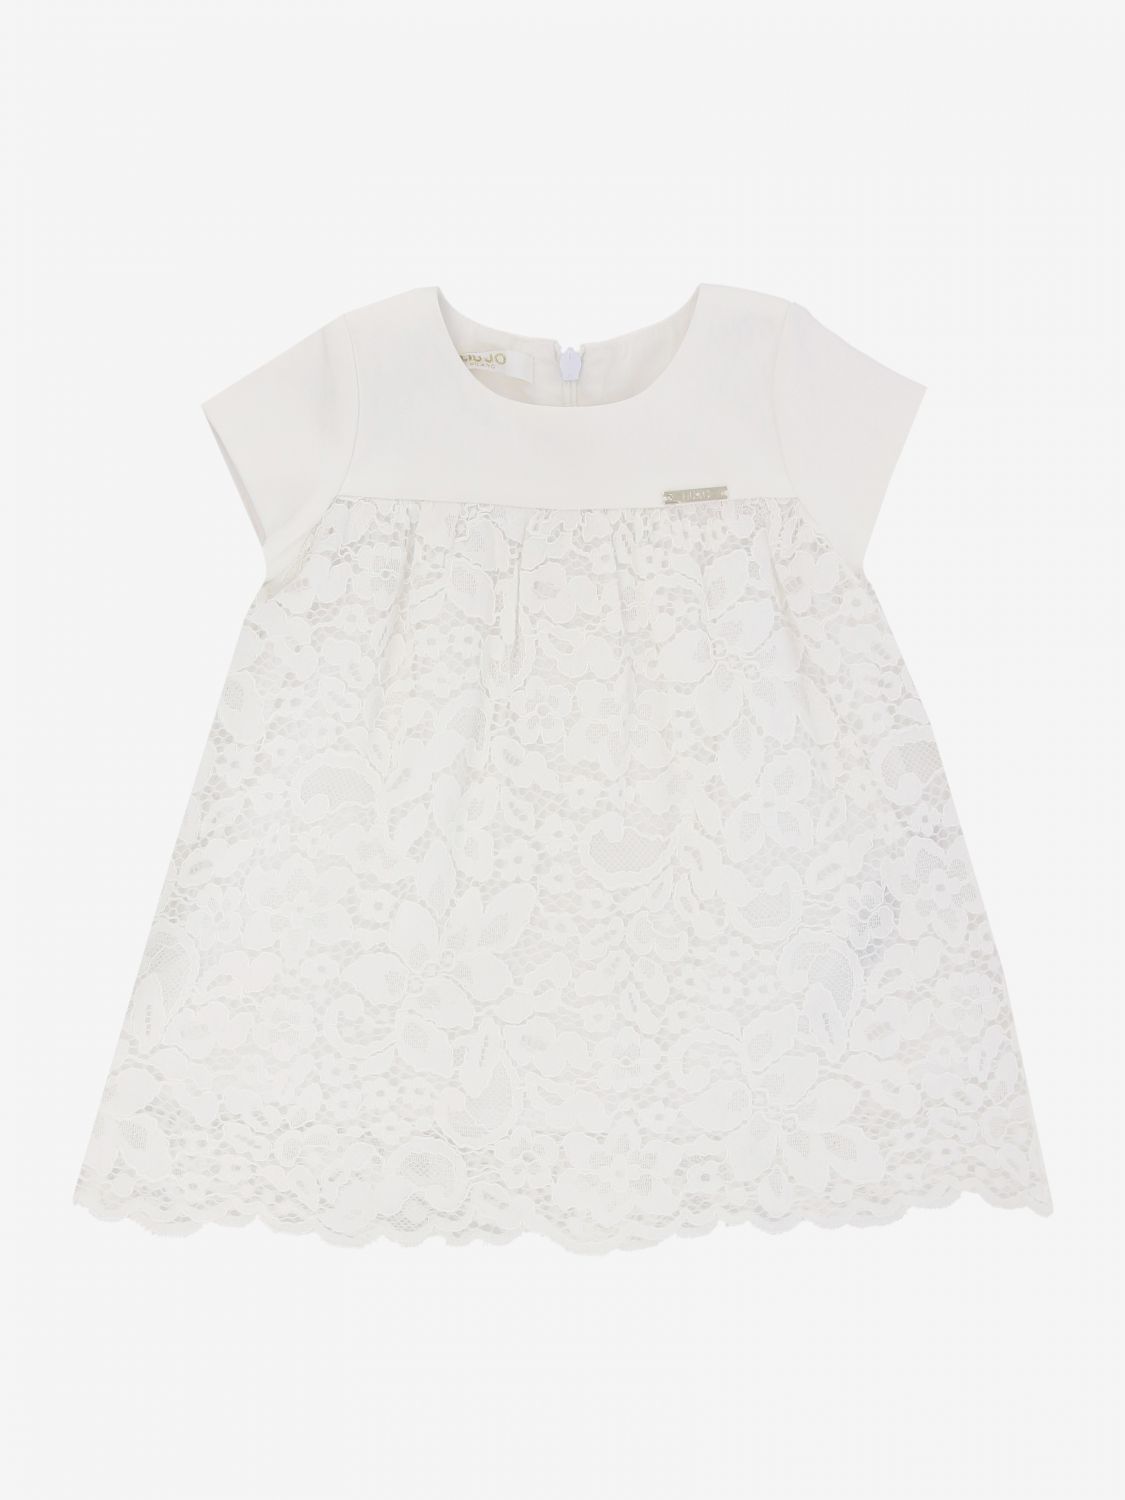 Liu Jo Outlet: dress in floral lace - White | Liu Jo dress HA0070 ...